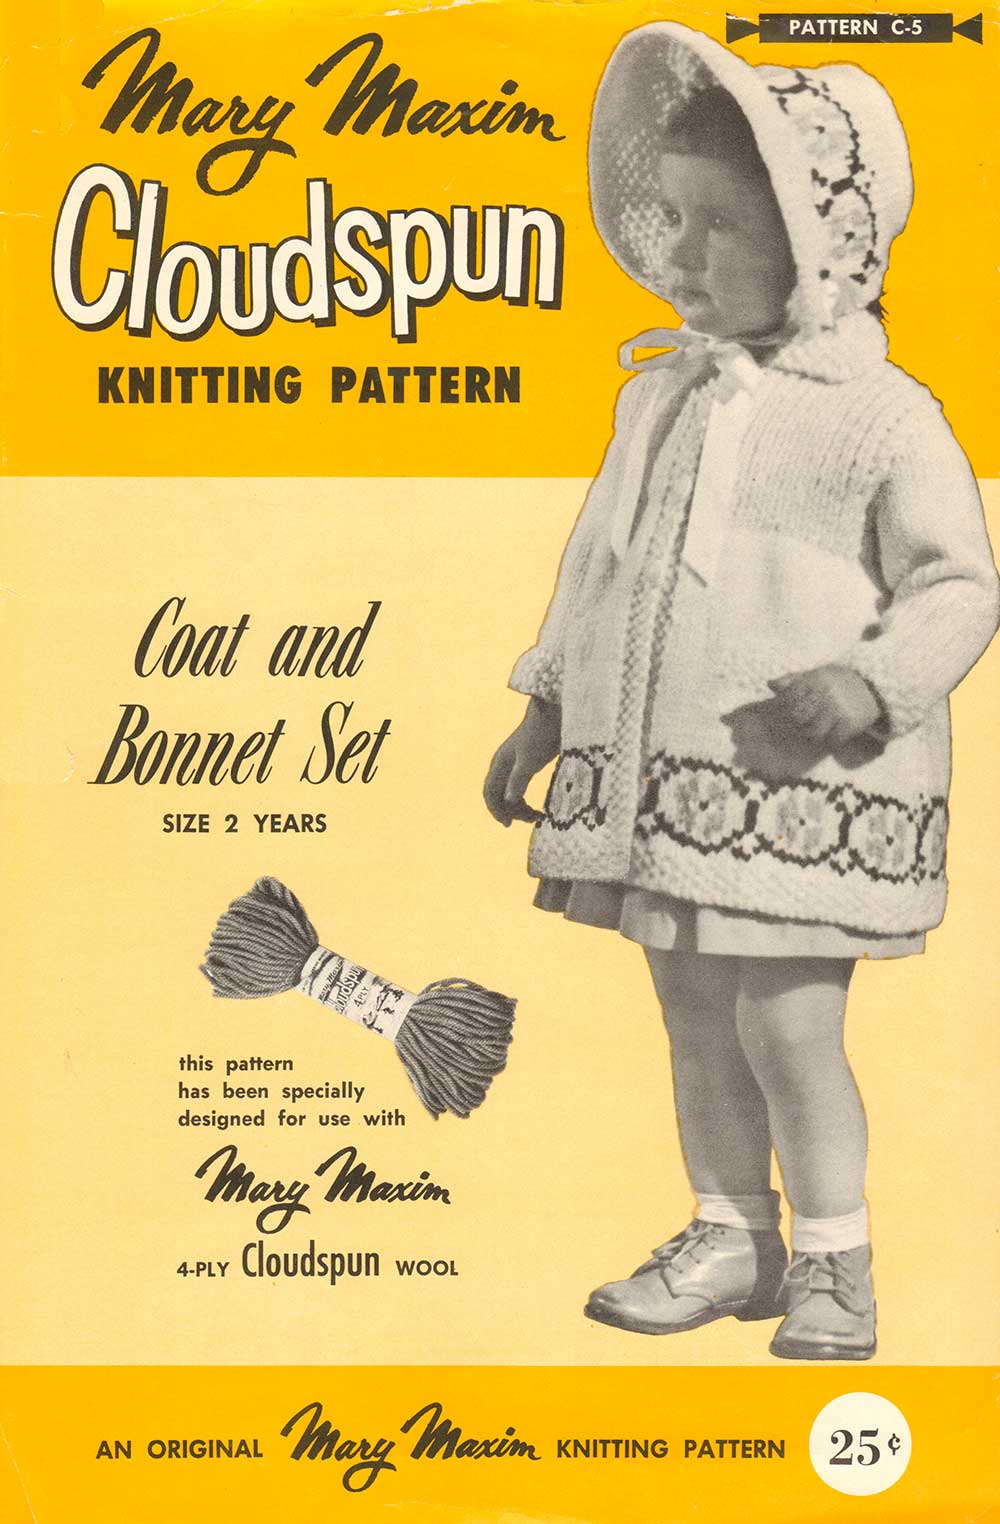 Coat And Bonnet Set Pattern